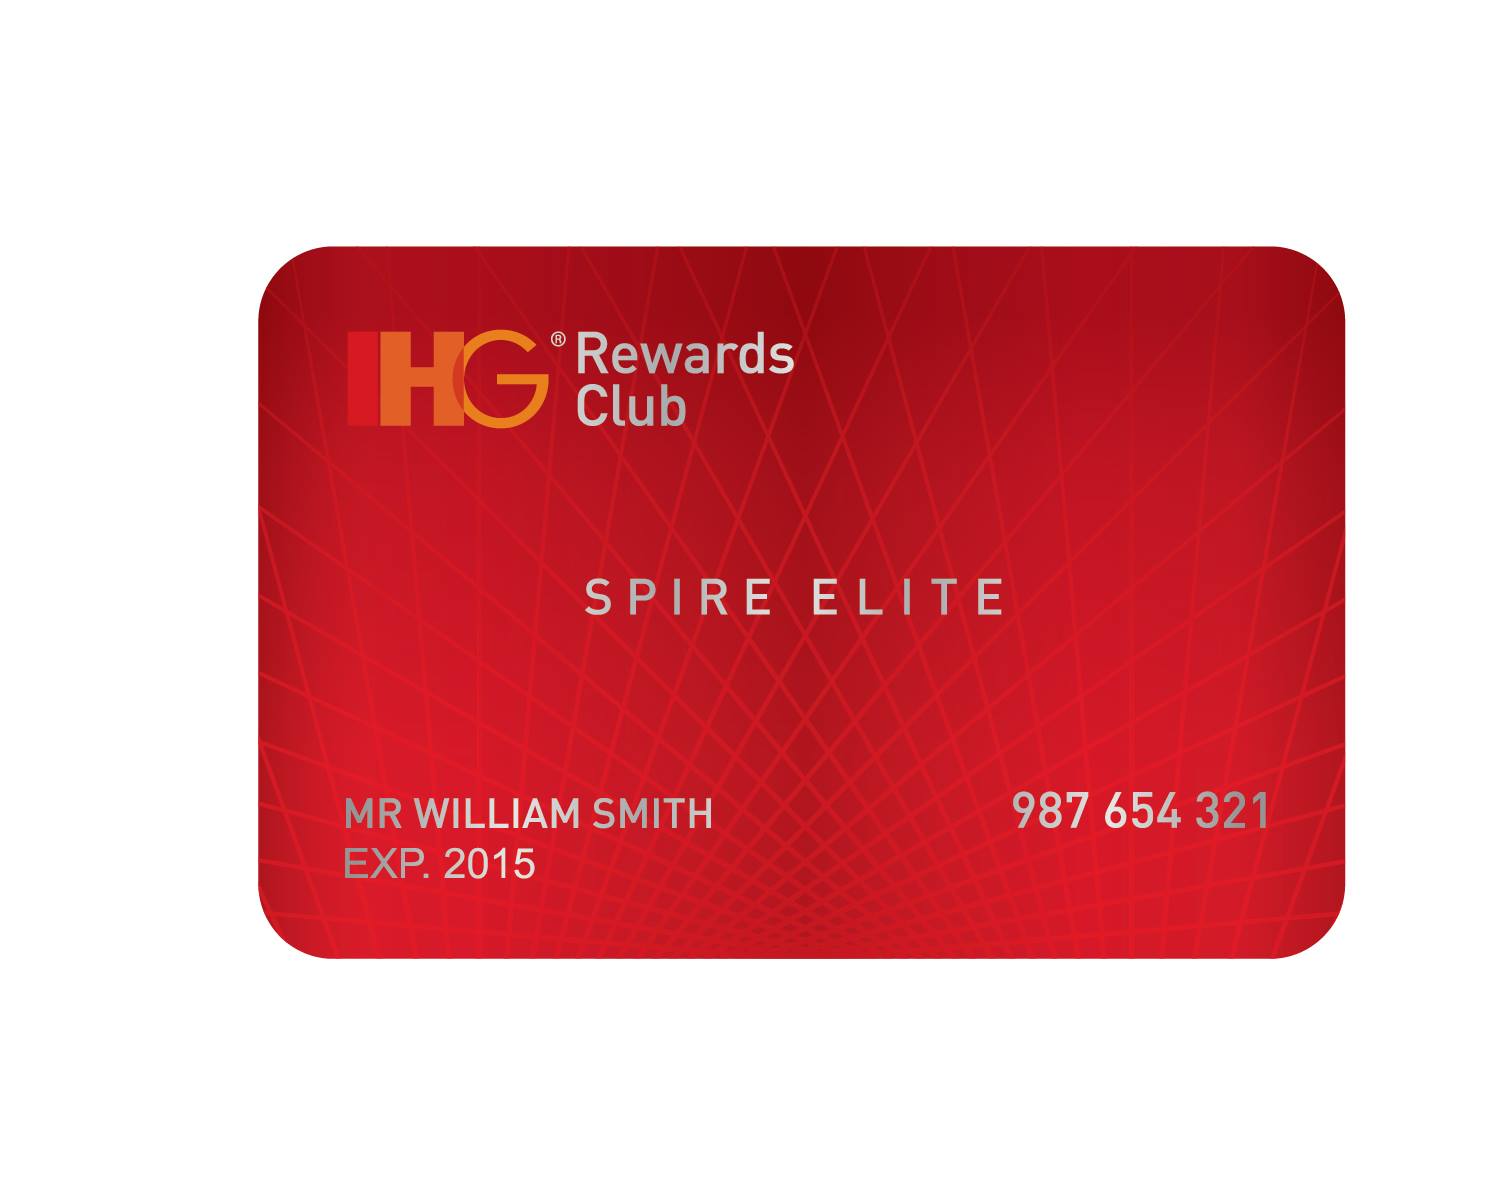 บัตรสมาชิก IHG Rewards Club แบบ Spire Elite